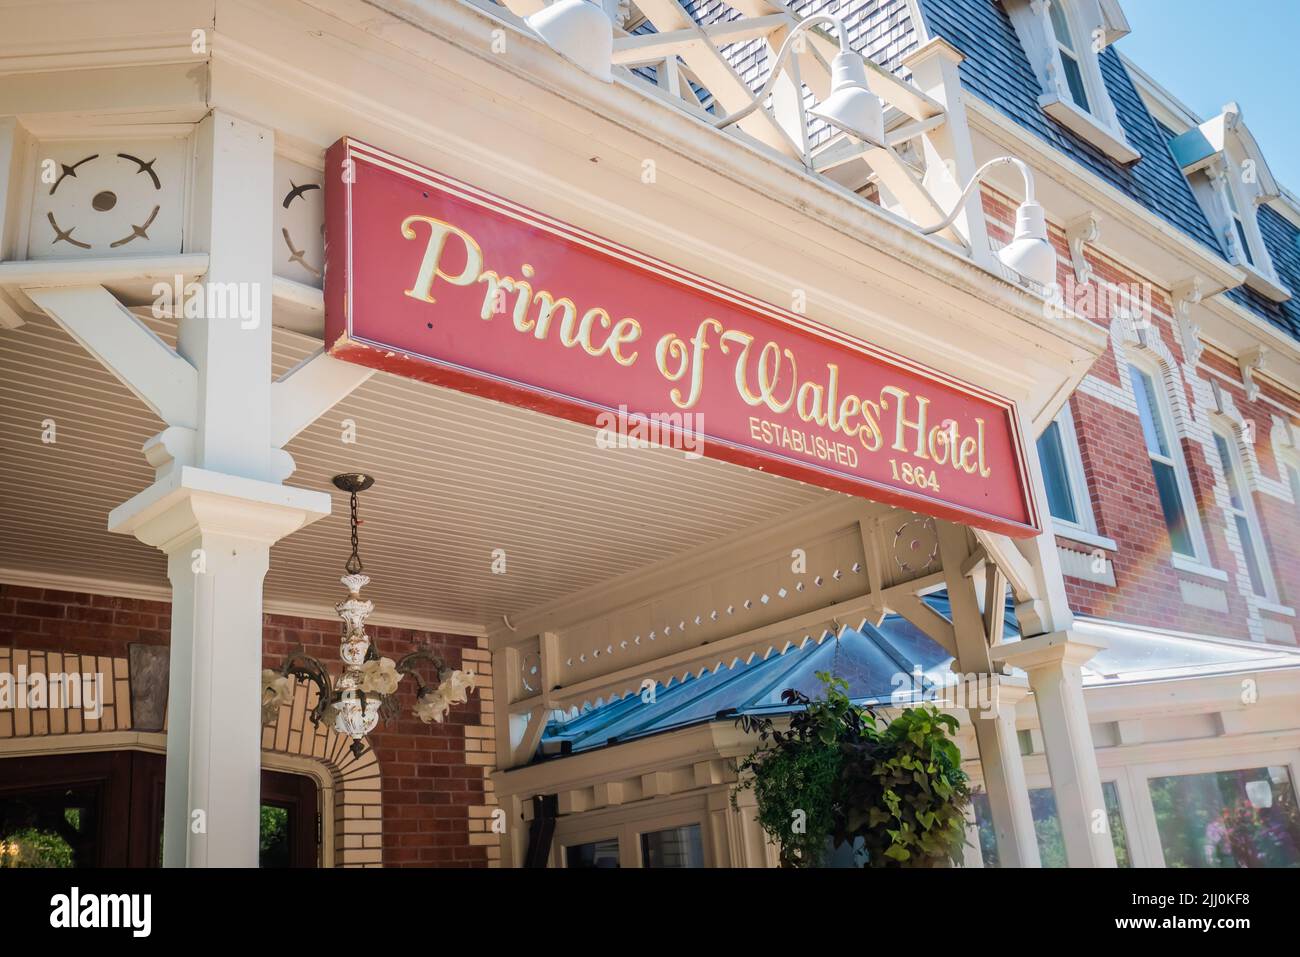 Prince of wales Hotel, Niagara on the Lake, ontario, kanada Stockfoto